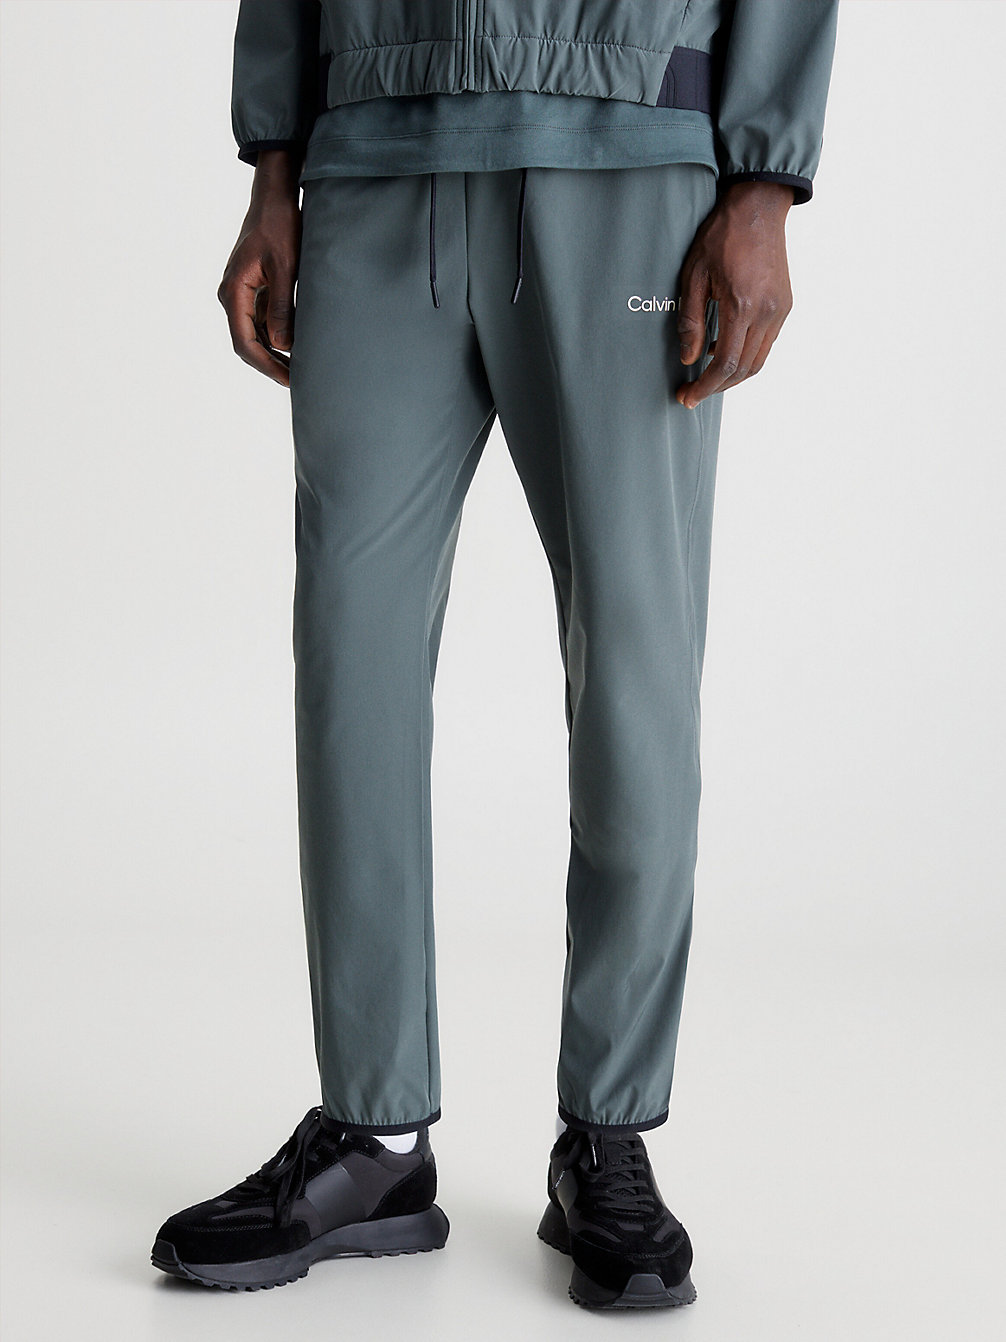 URBAN CHIC > Spodnie Dresowe Ze Stretchem > undefined Mężczyźni - Calvin Klein